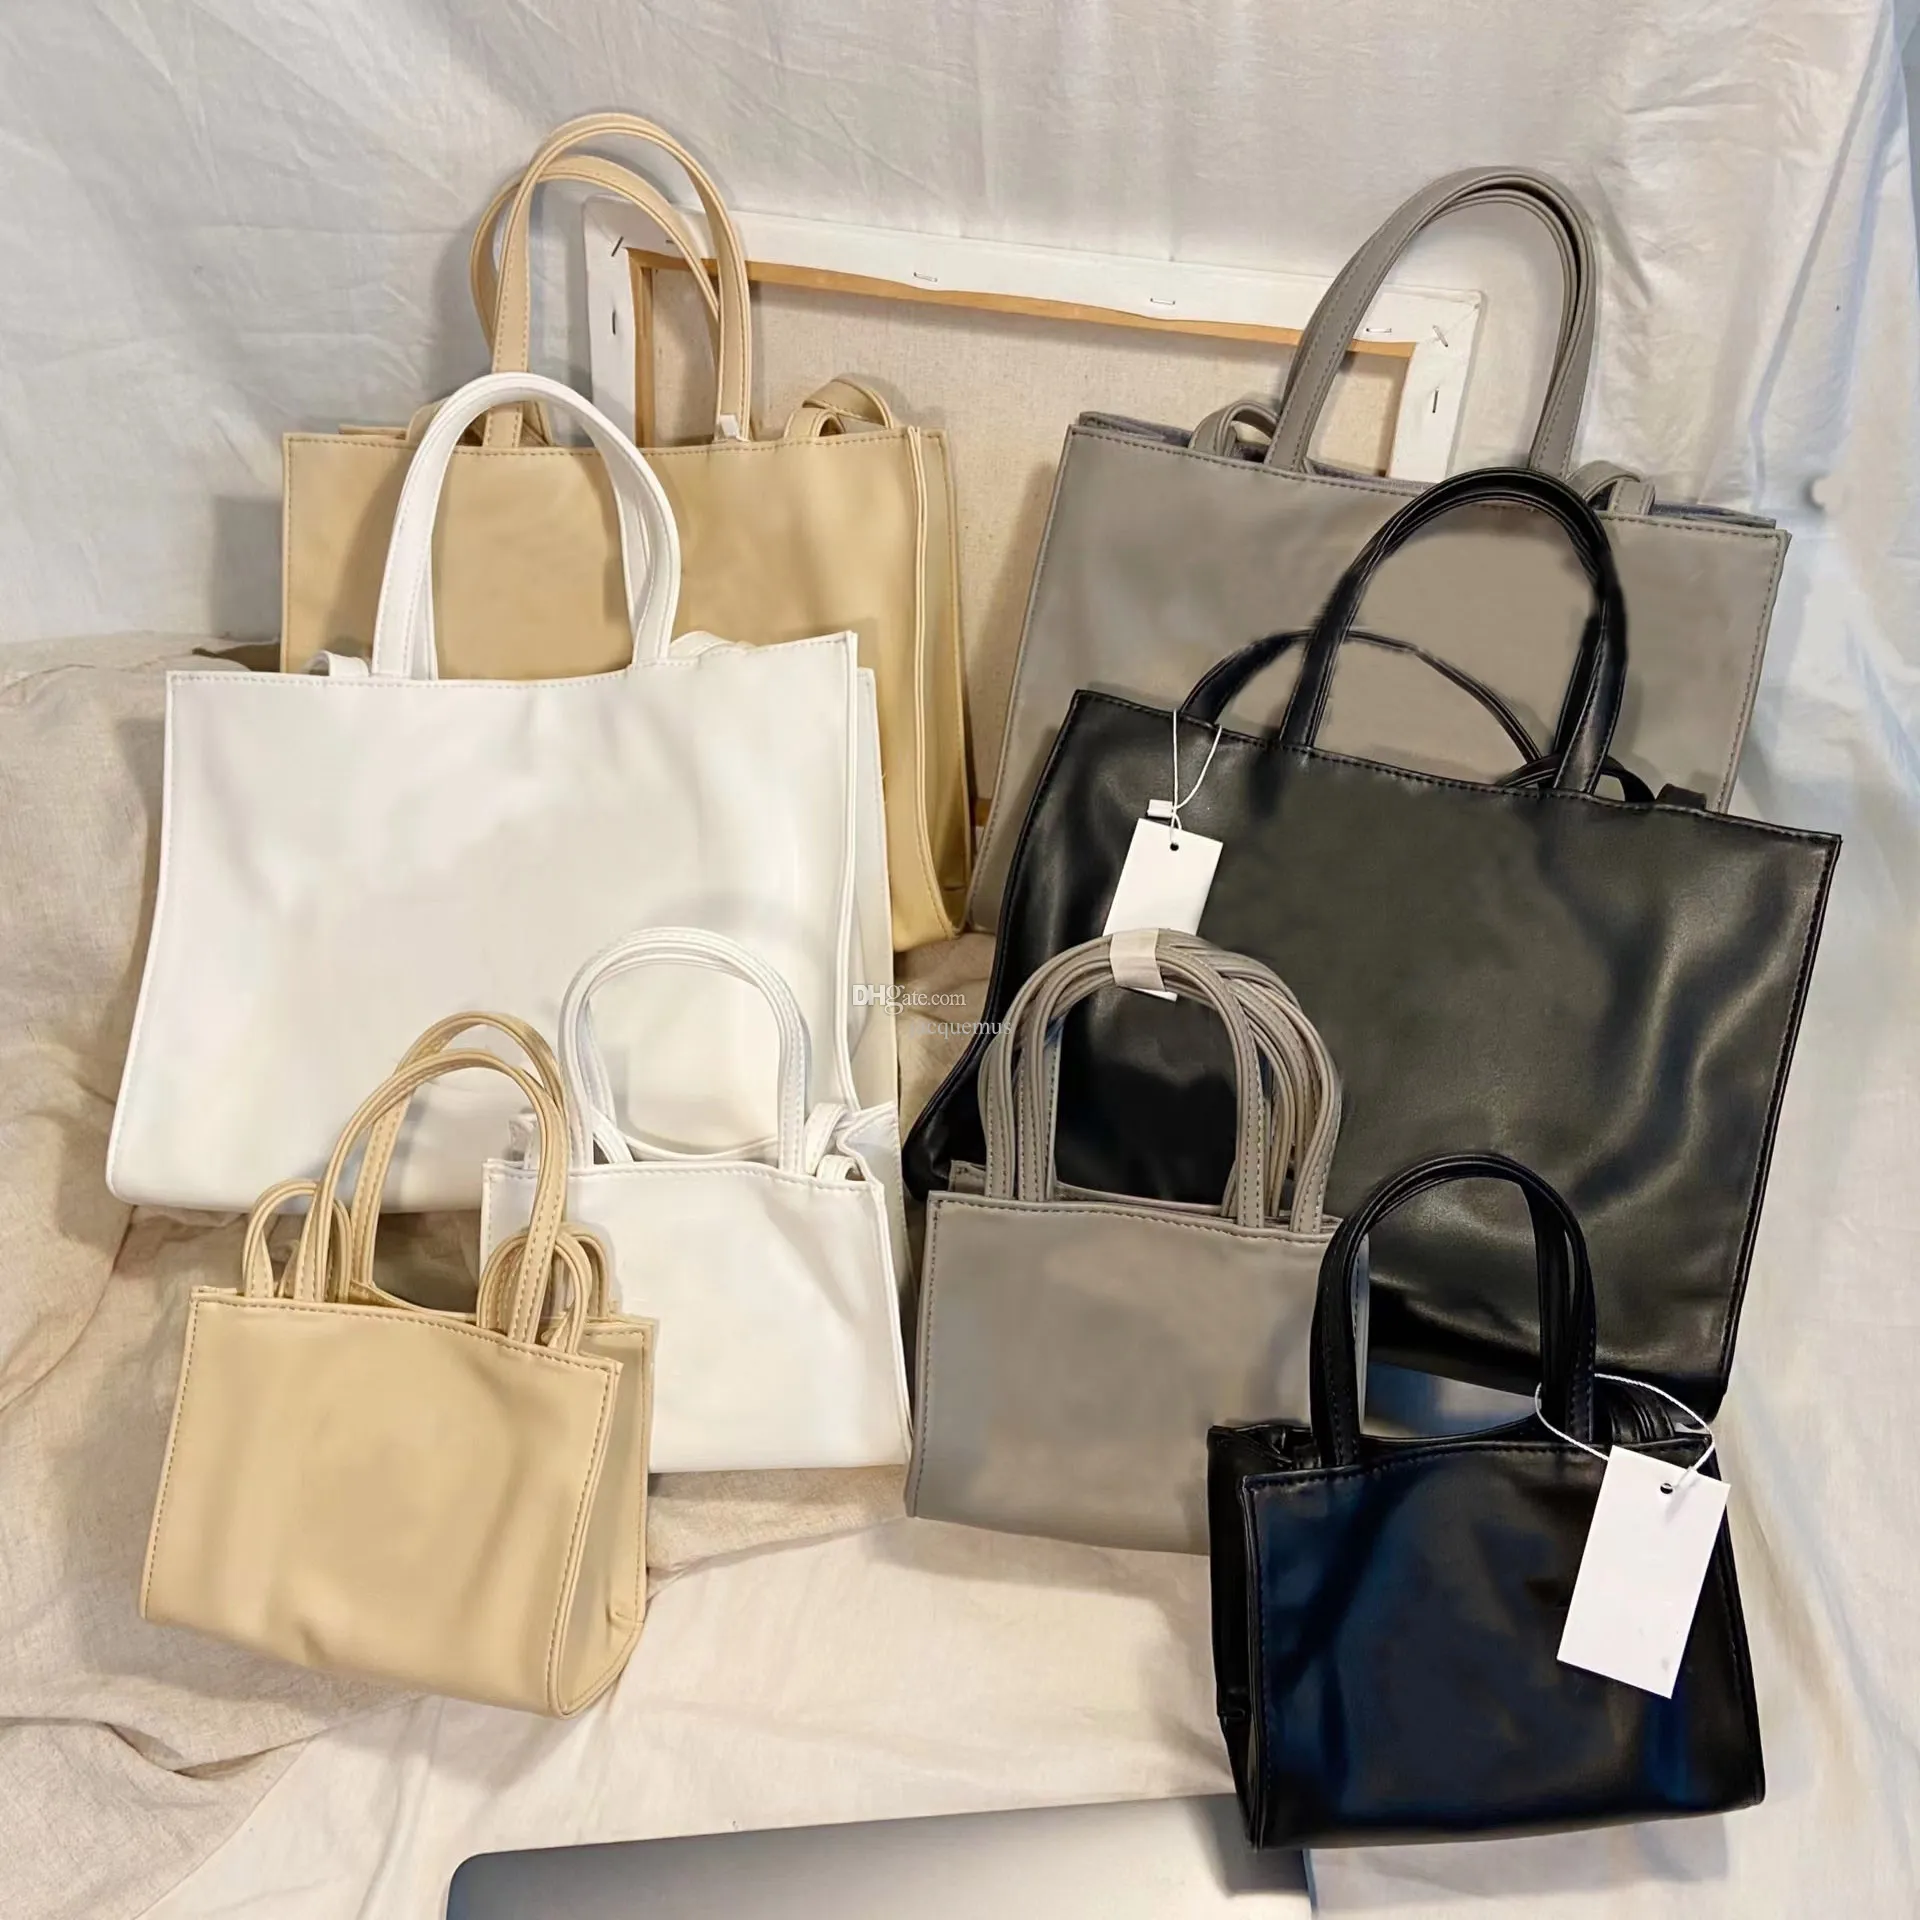 2022 En İyi Tasarımcı 3 Boyut Omuz Çantaları Mini Çantalar Kadın Çanta Yumuşak Deri Crossbody Lüks Moda Alışveriş Süet Yün Satchels Bag